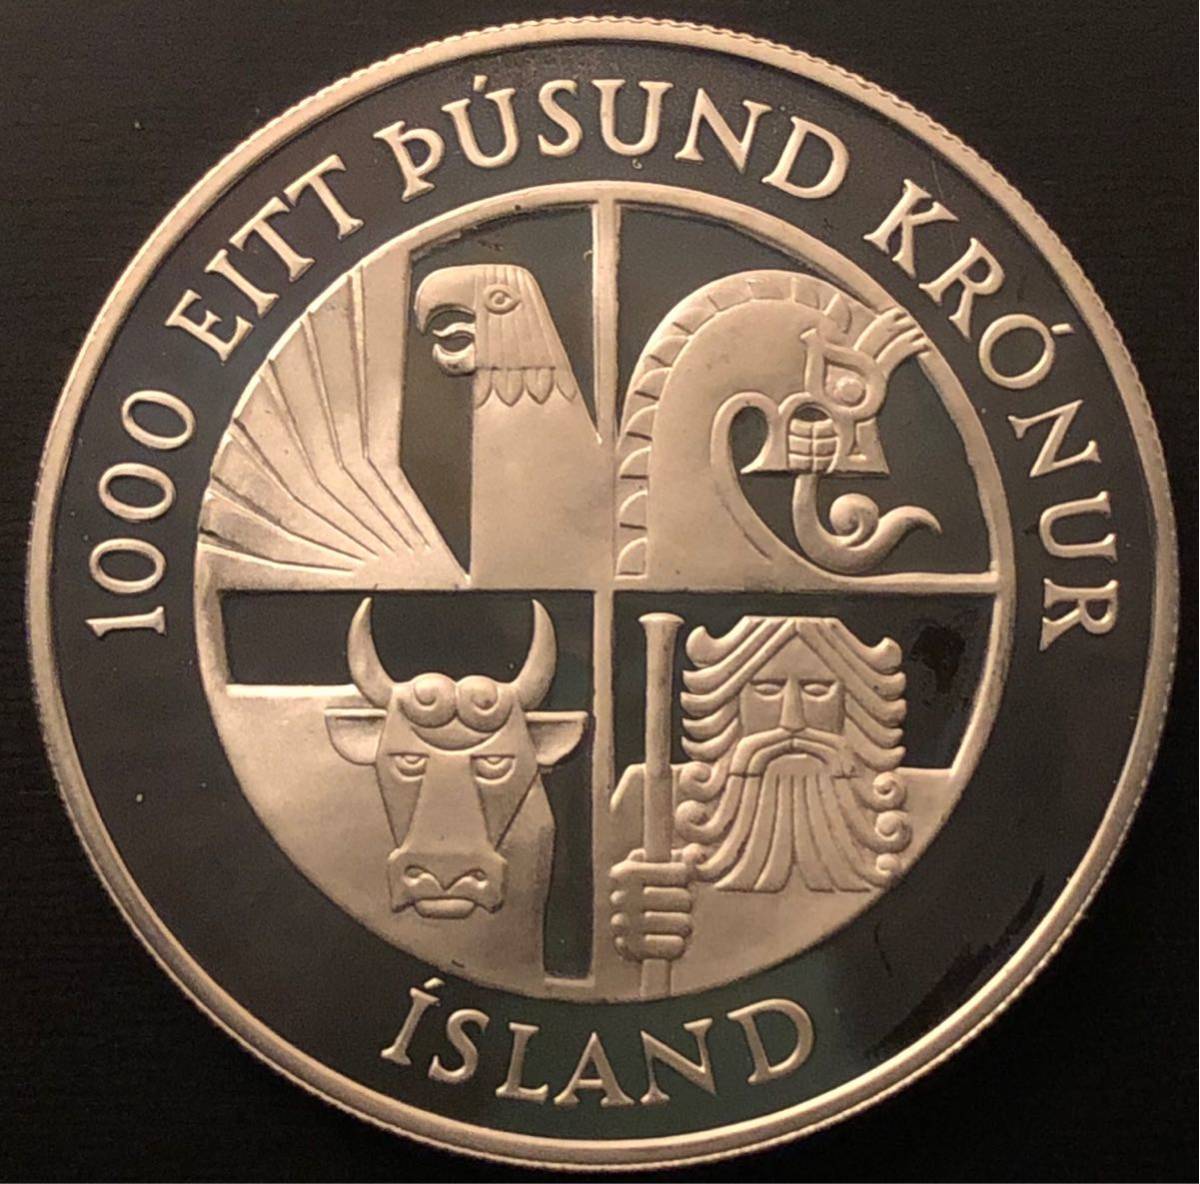  原文:アイスランド銀貨 1974 ヴァイキング入植1100年 プルーフ 1000kronur